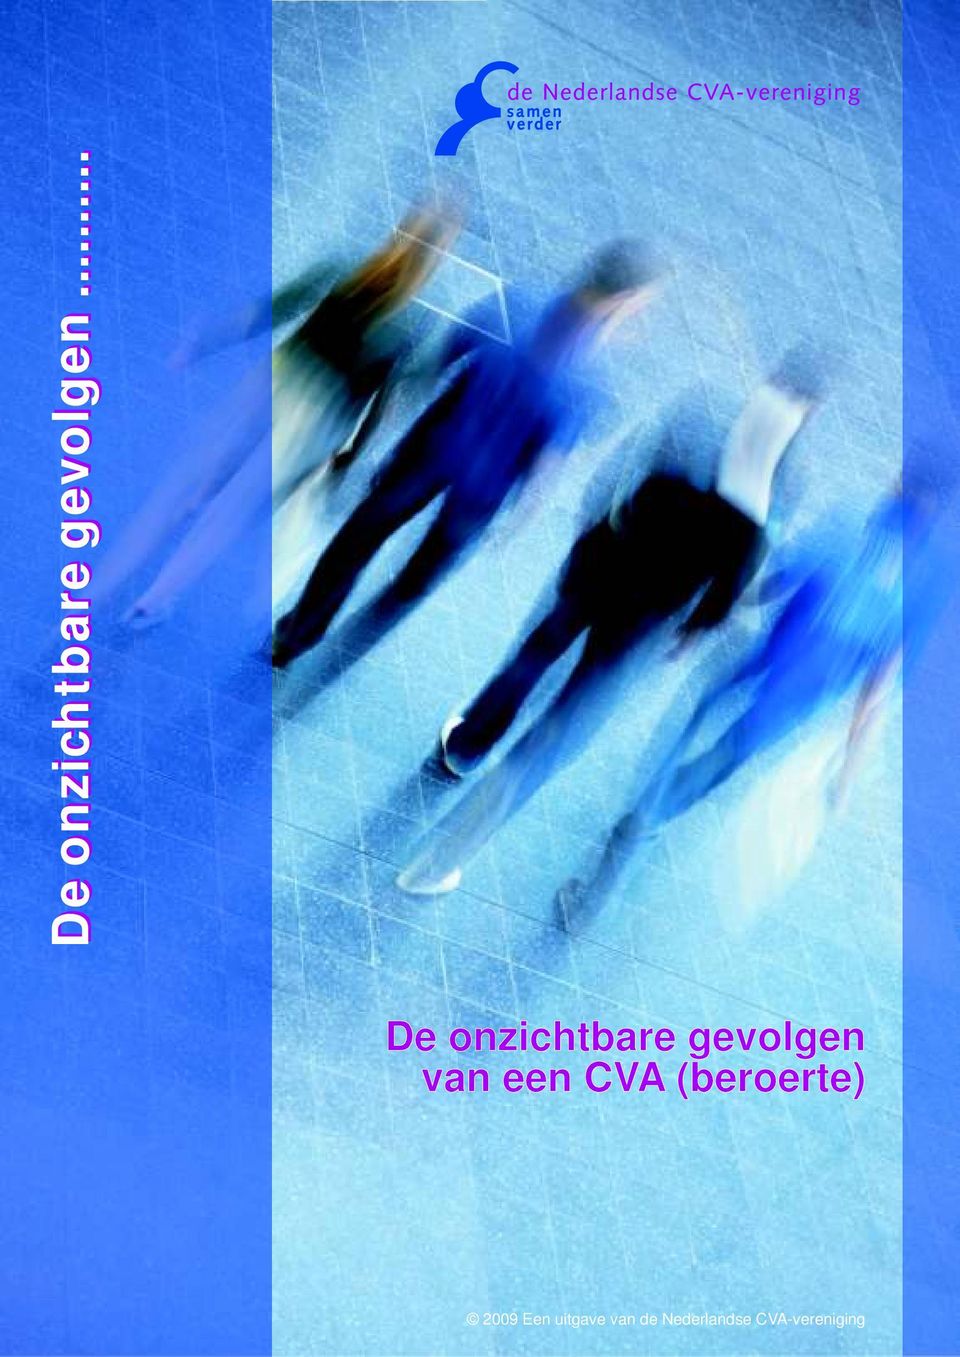 CVA (beroerte) 2009 Een uitgave van